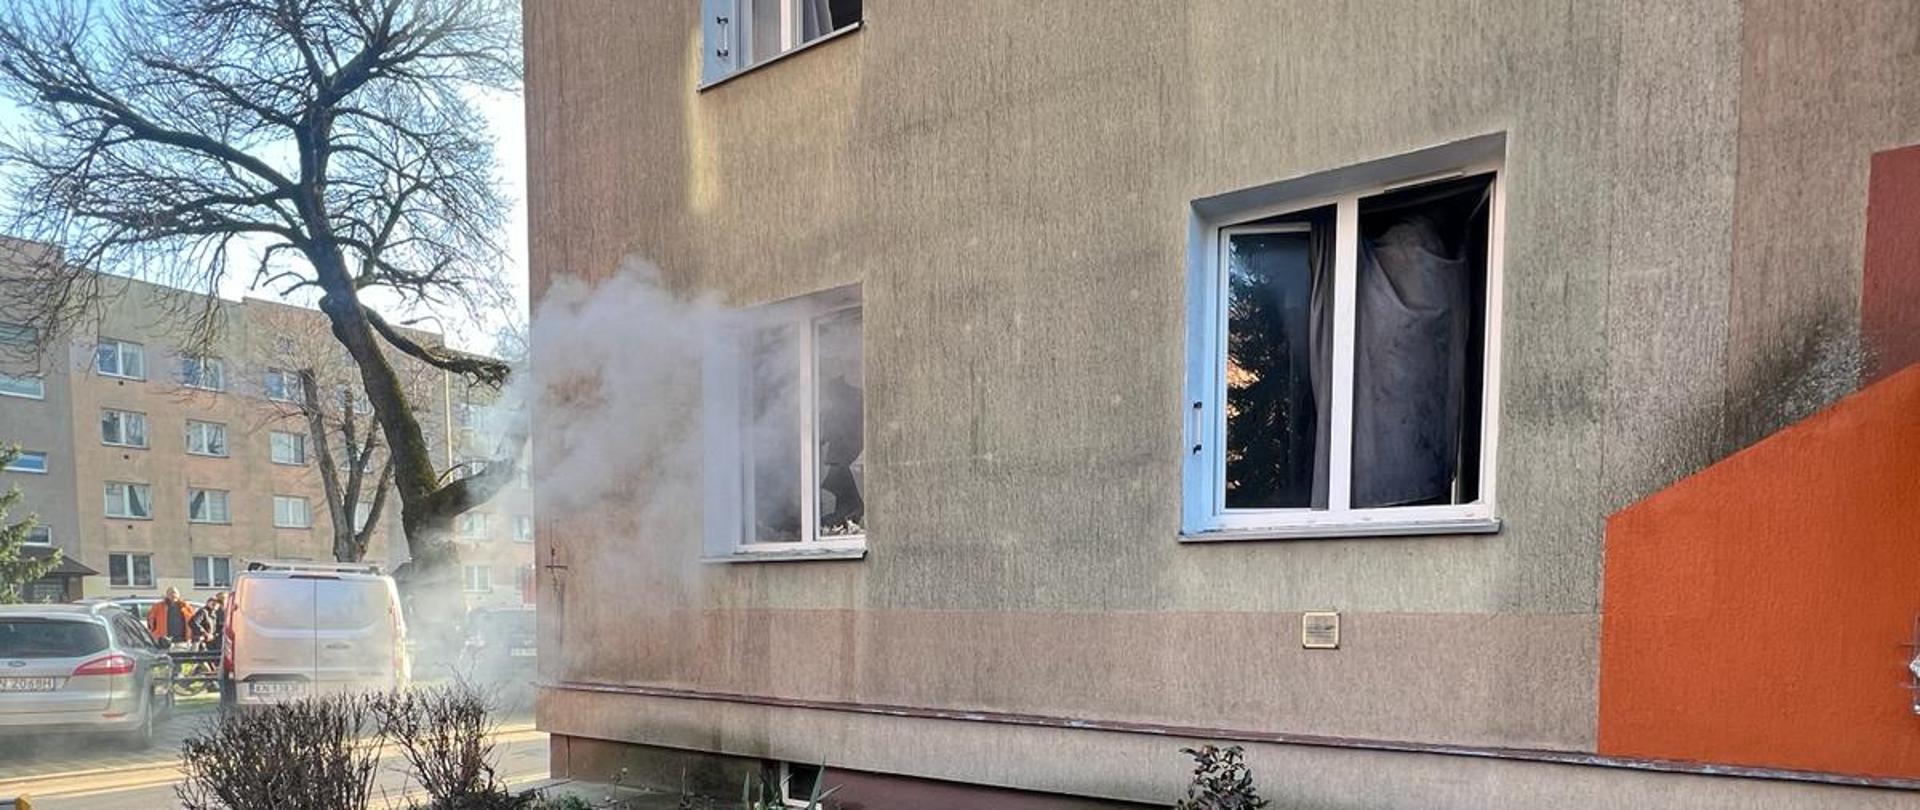 Dym wydobywający się z okna mieszkania